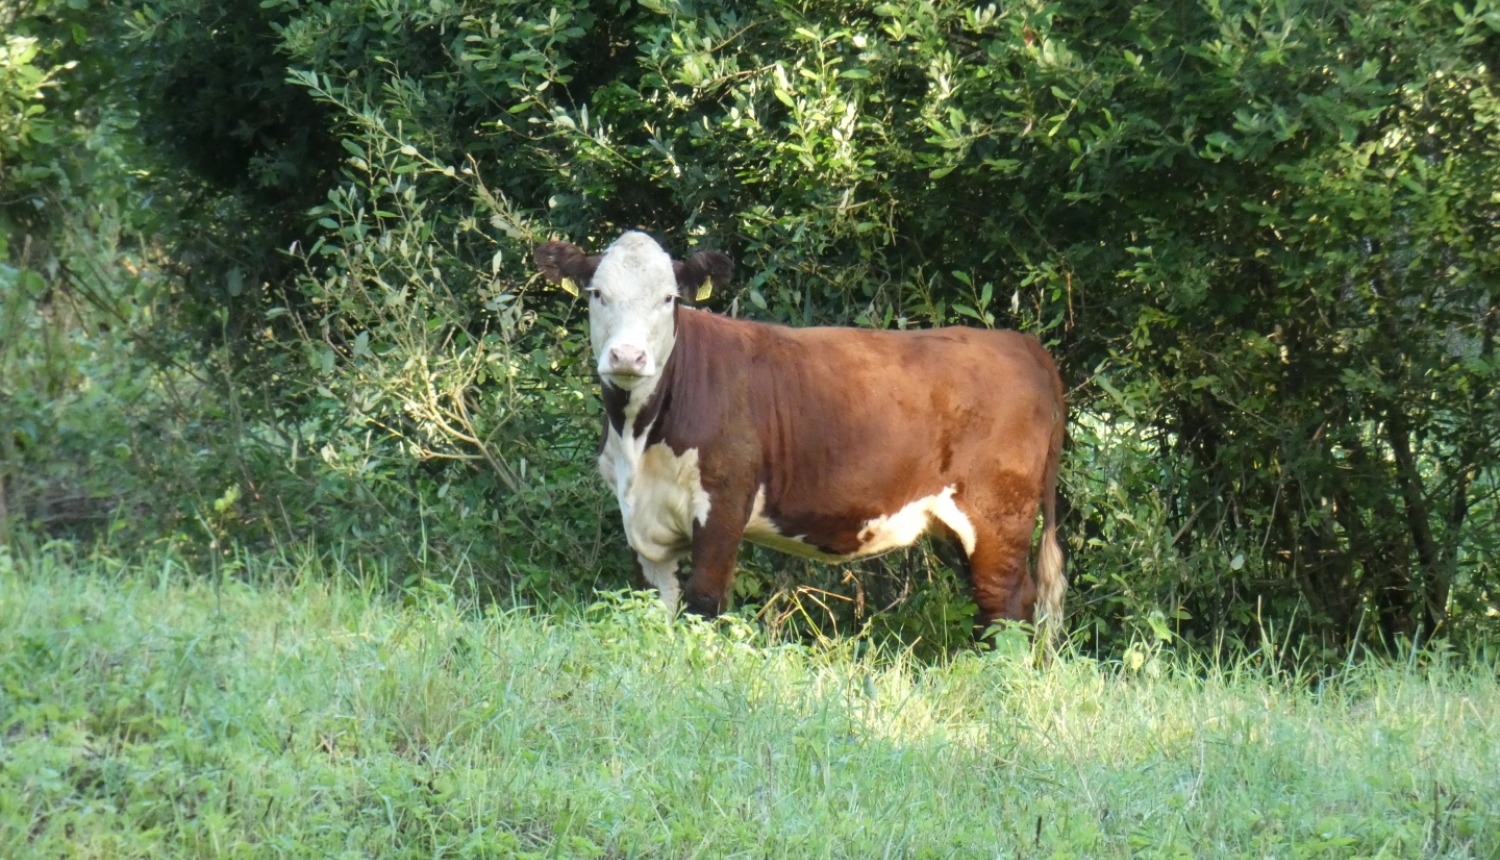 Meža malā stāv brūni balta govs